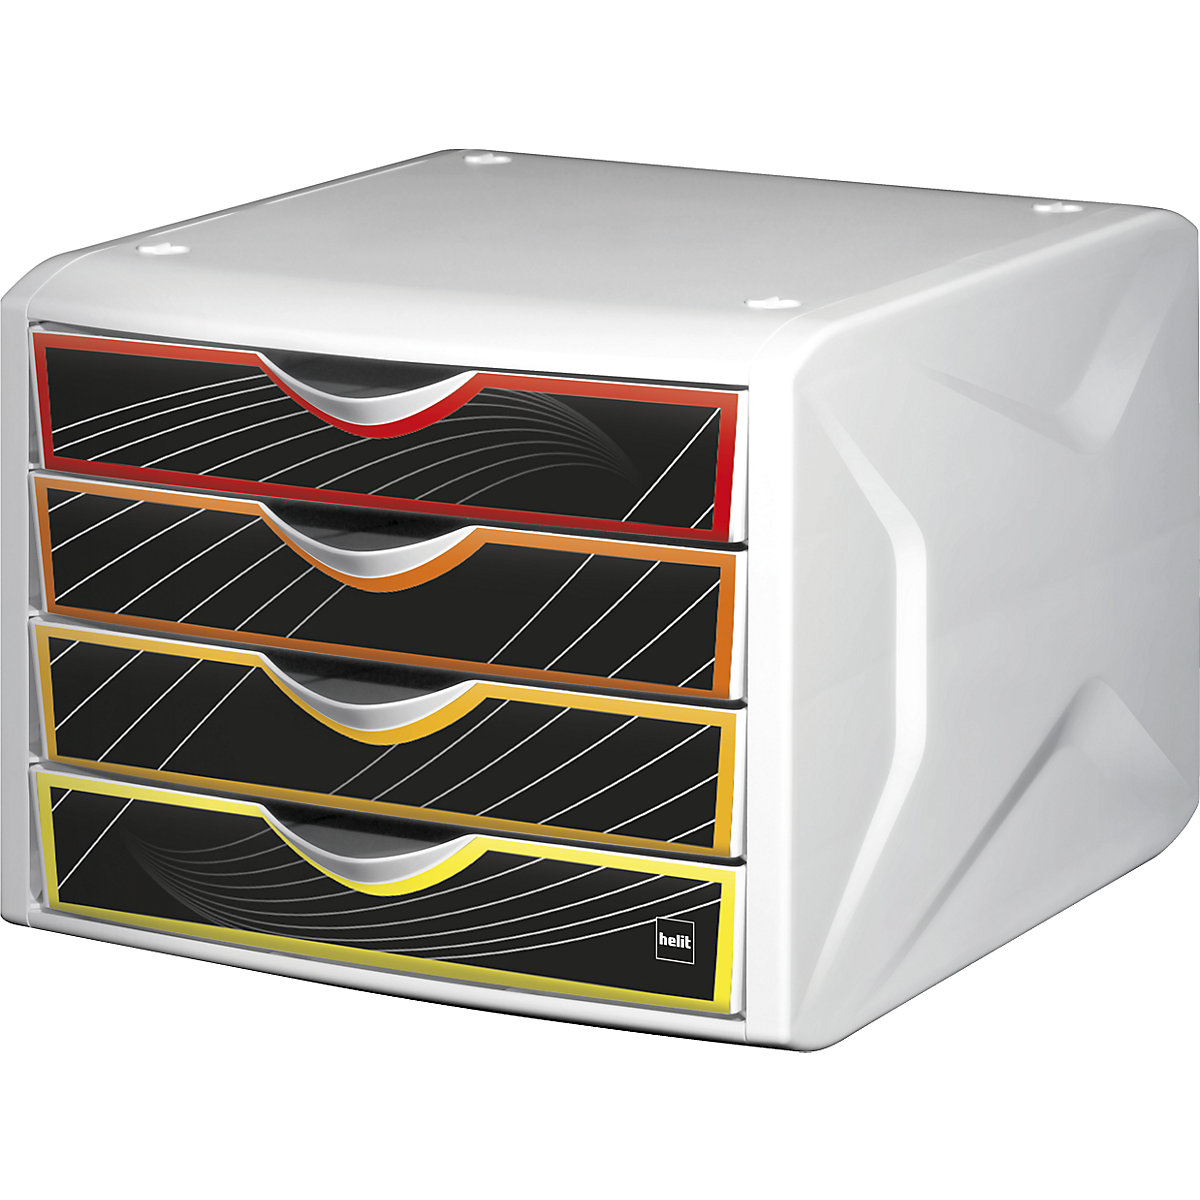 Zásuvkový box – helit, v x š x h 212 x 262 x 330 mm, OJ 5 ks, dizajn zásuvky priority-2